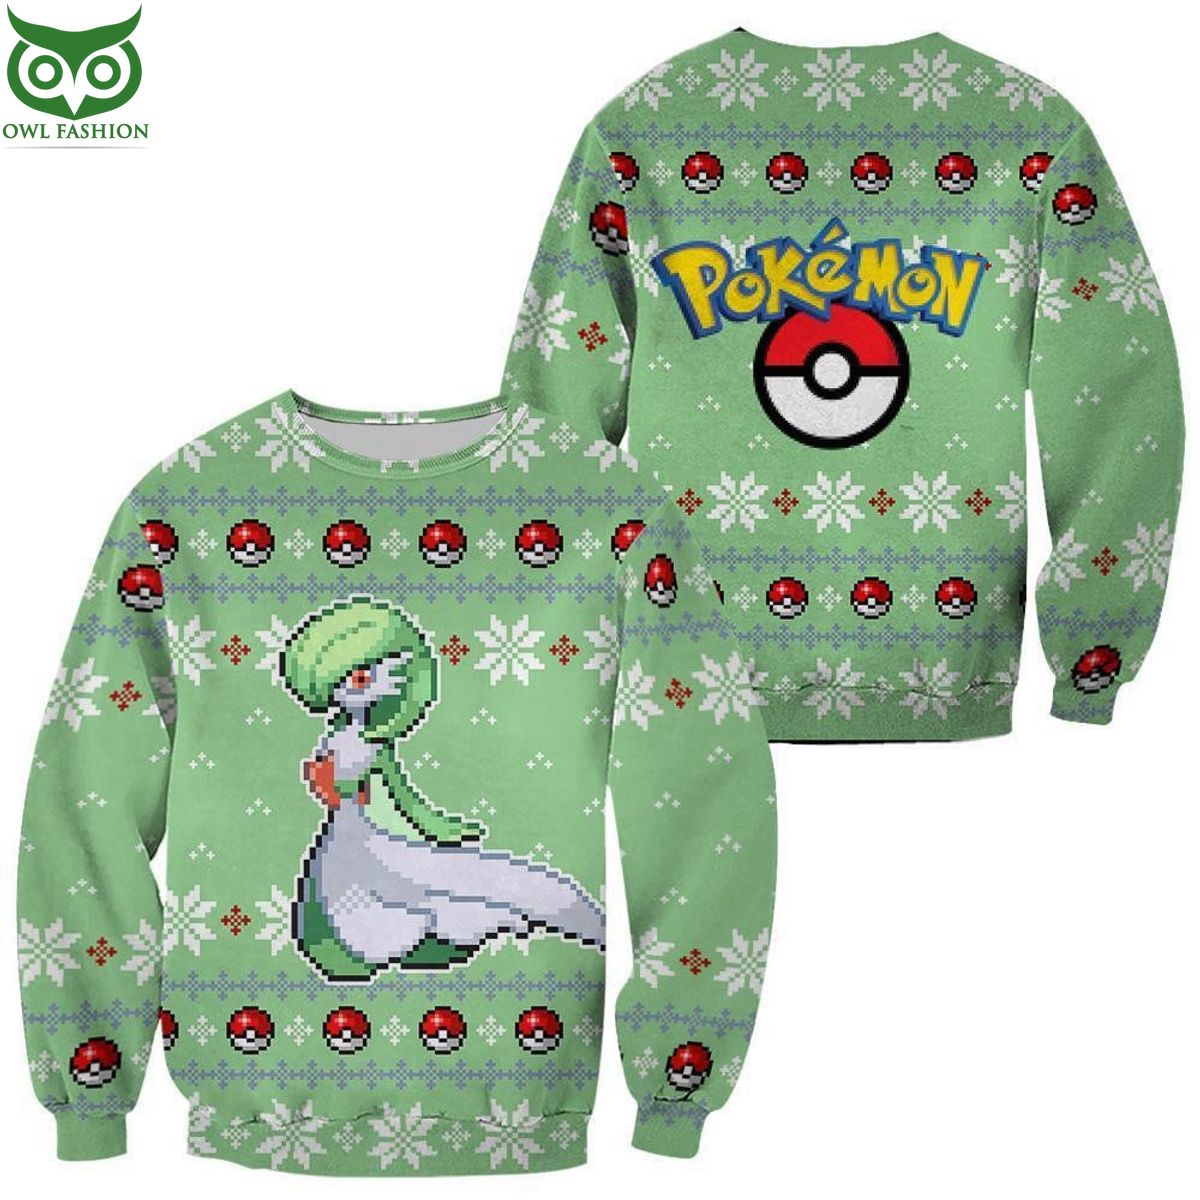 Trending Pokemon Gardevoir Ugly Christmas Sweater Xmas Gift